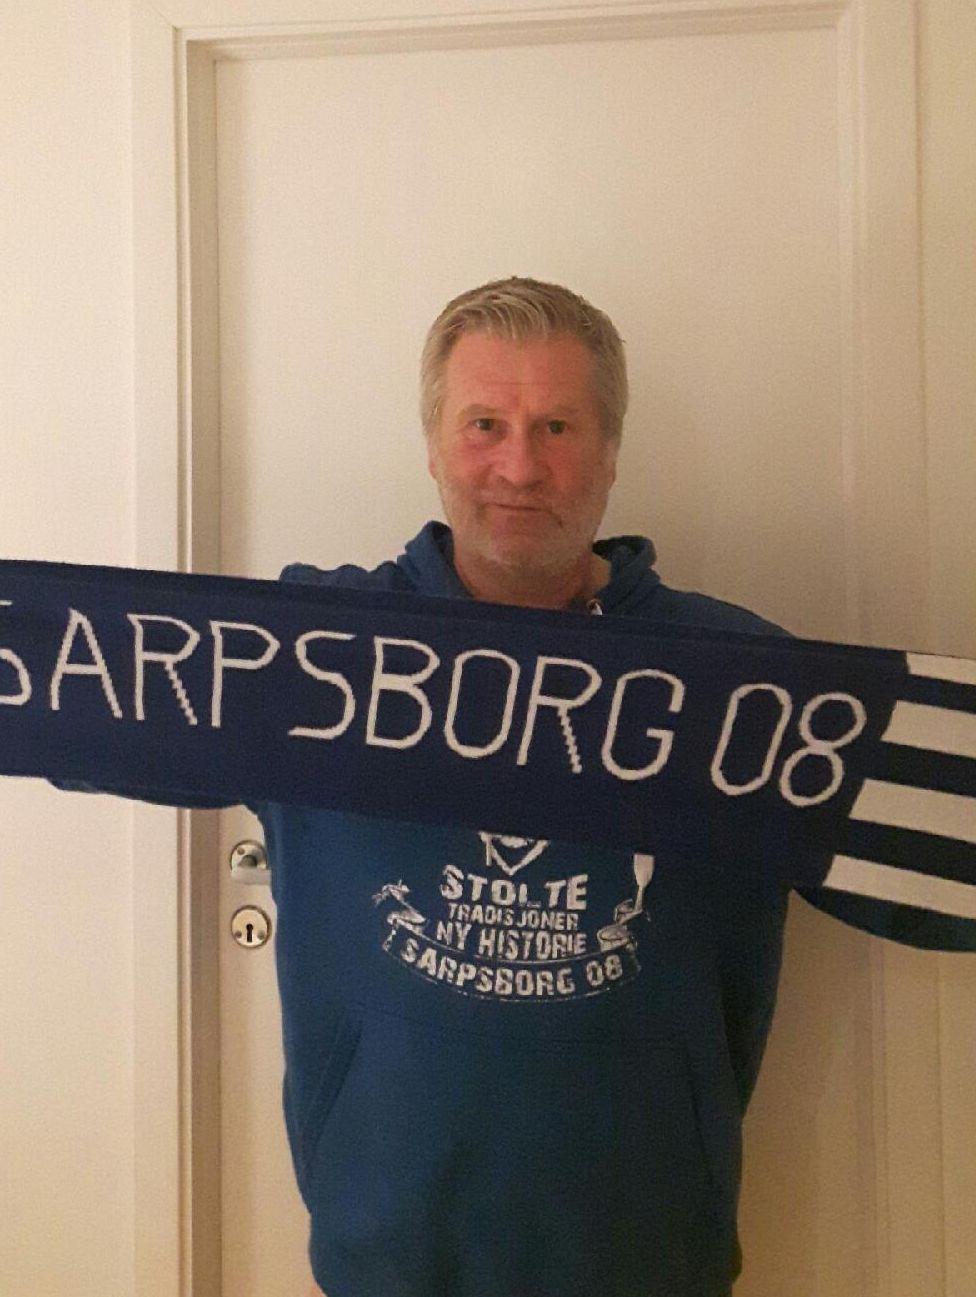  Svend René Nygaard er ihuga Sarpsborg-supporter, og han er blitt landskjent for sin elleville radiokommentering. Nå kommenterer han kamper for Sarpsborg Arbeiderblad.